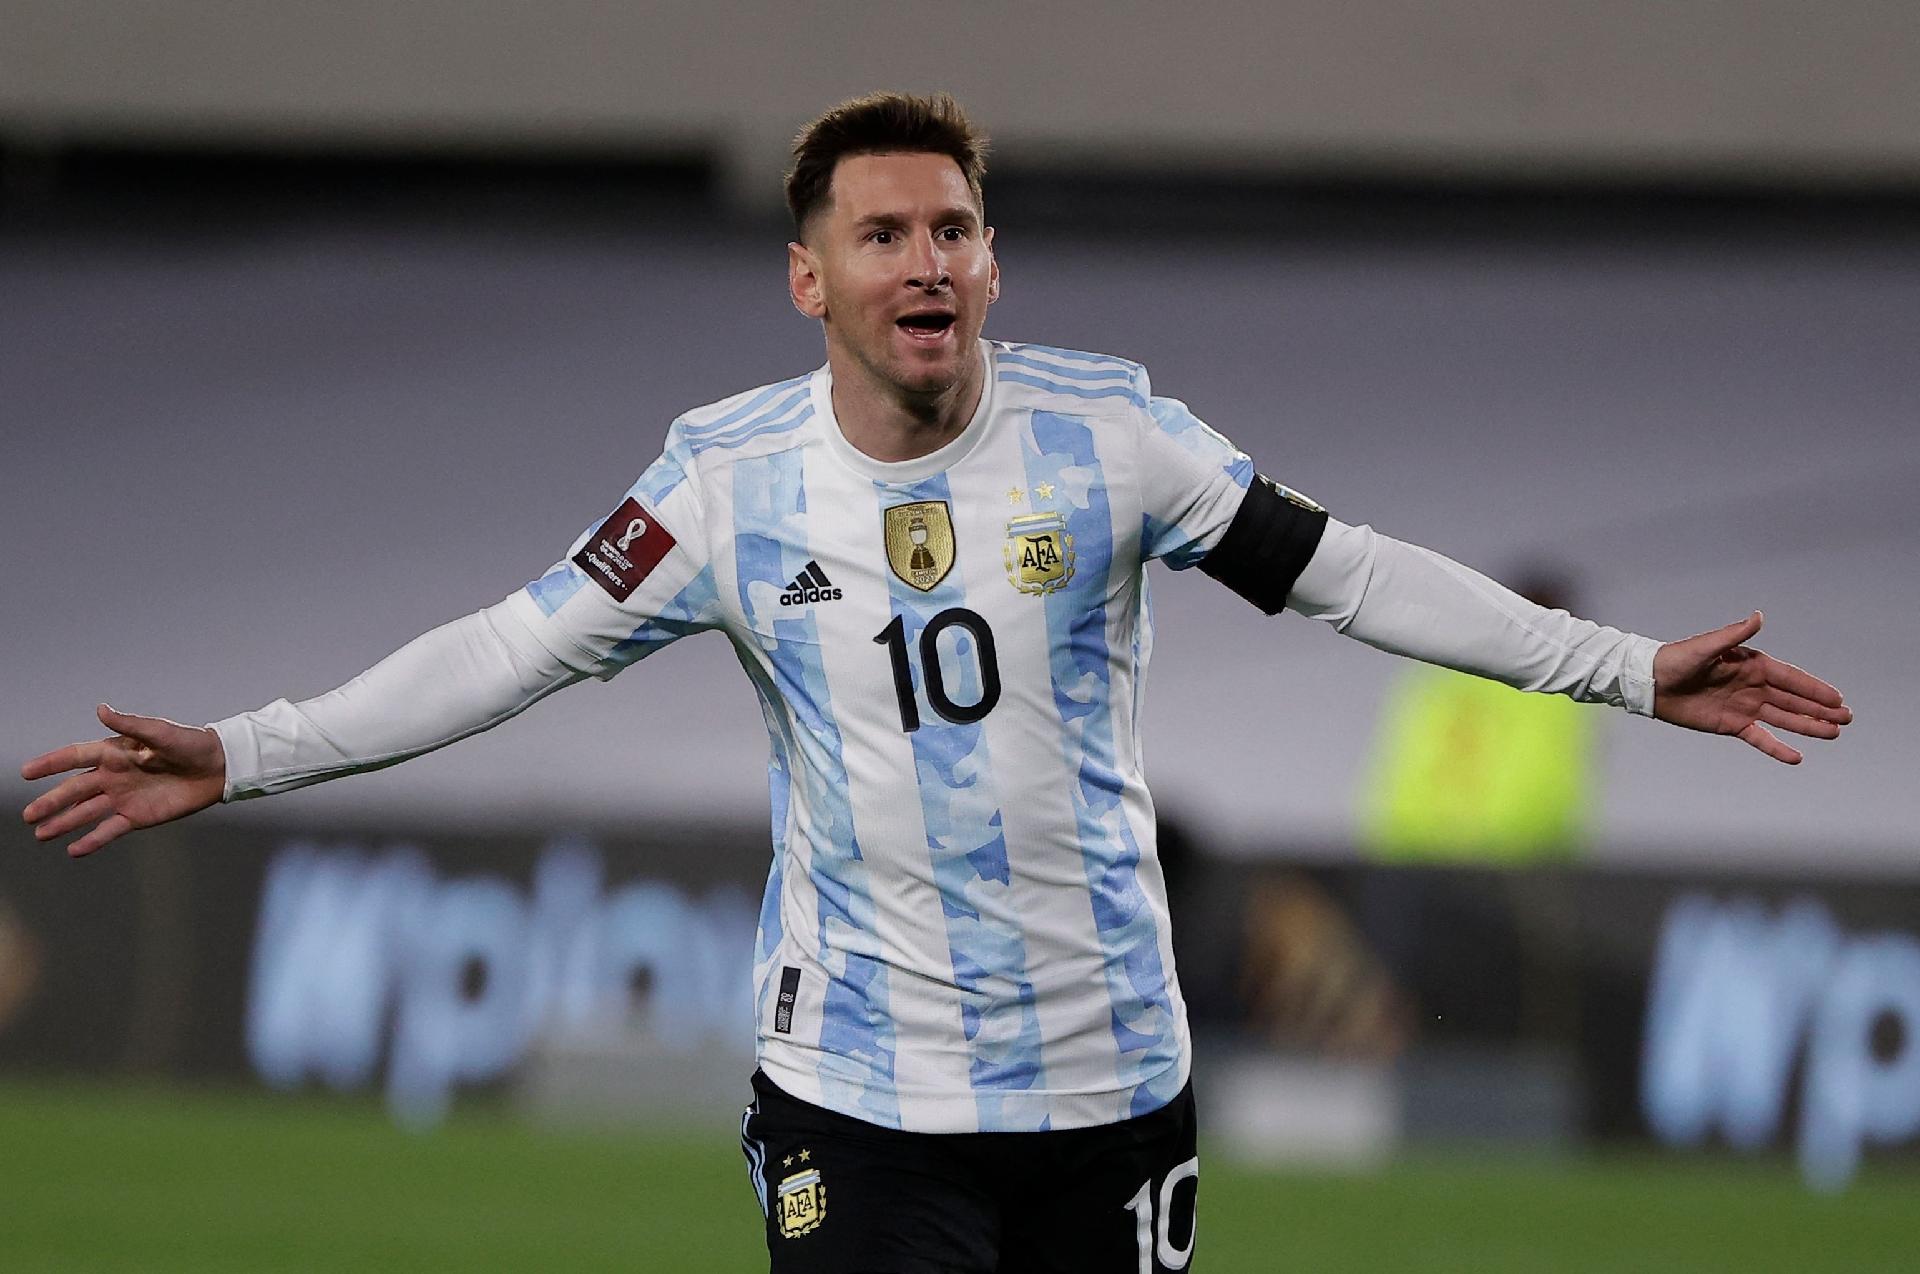 Copa 2022: FIFA 23 prevê Argentina campeã em final contra o Brasil, fifa